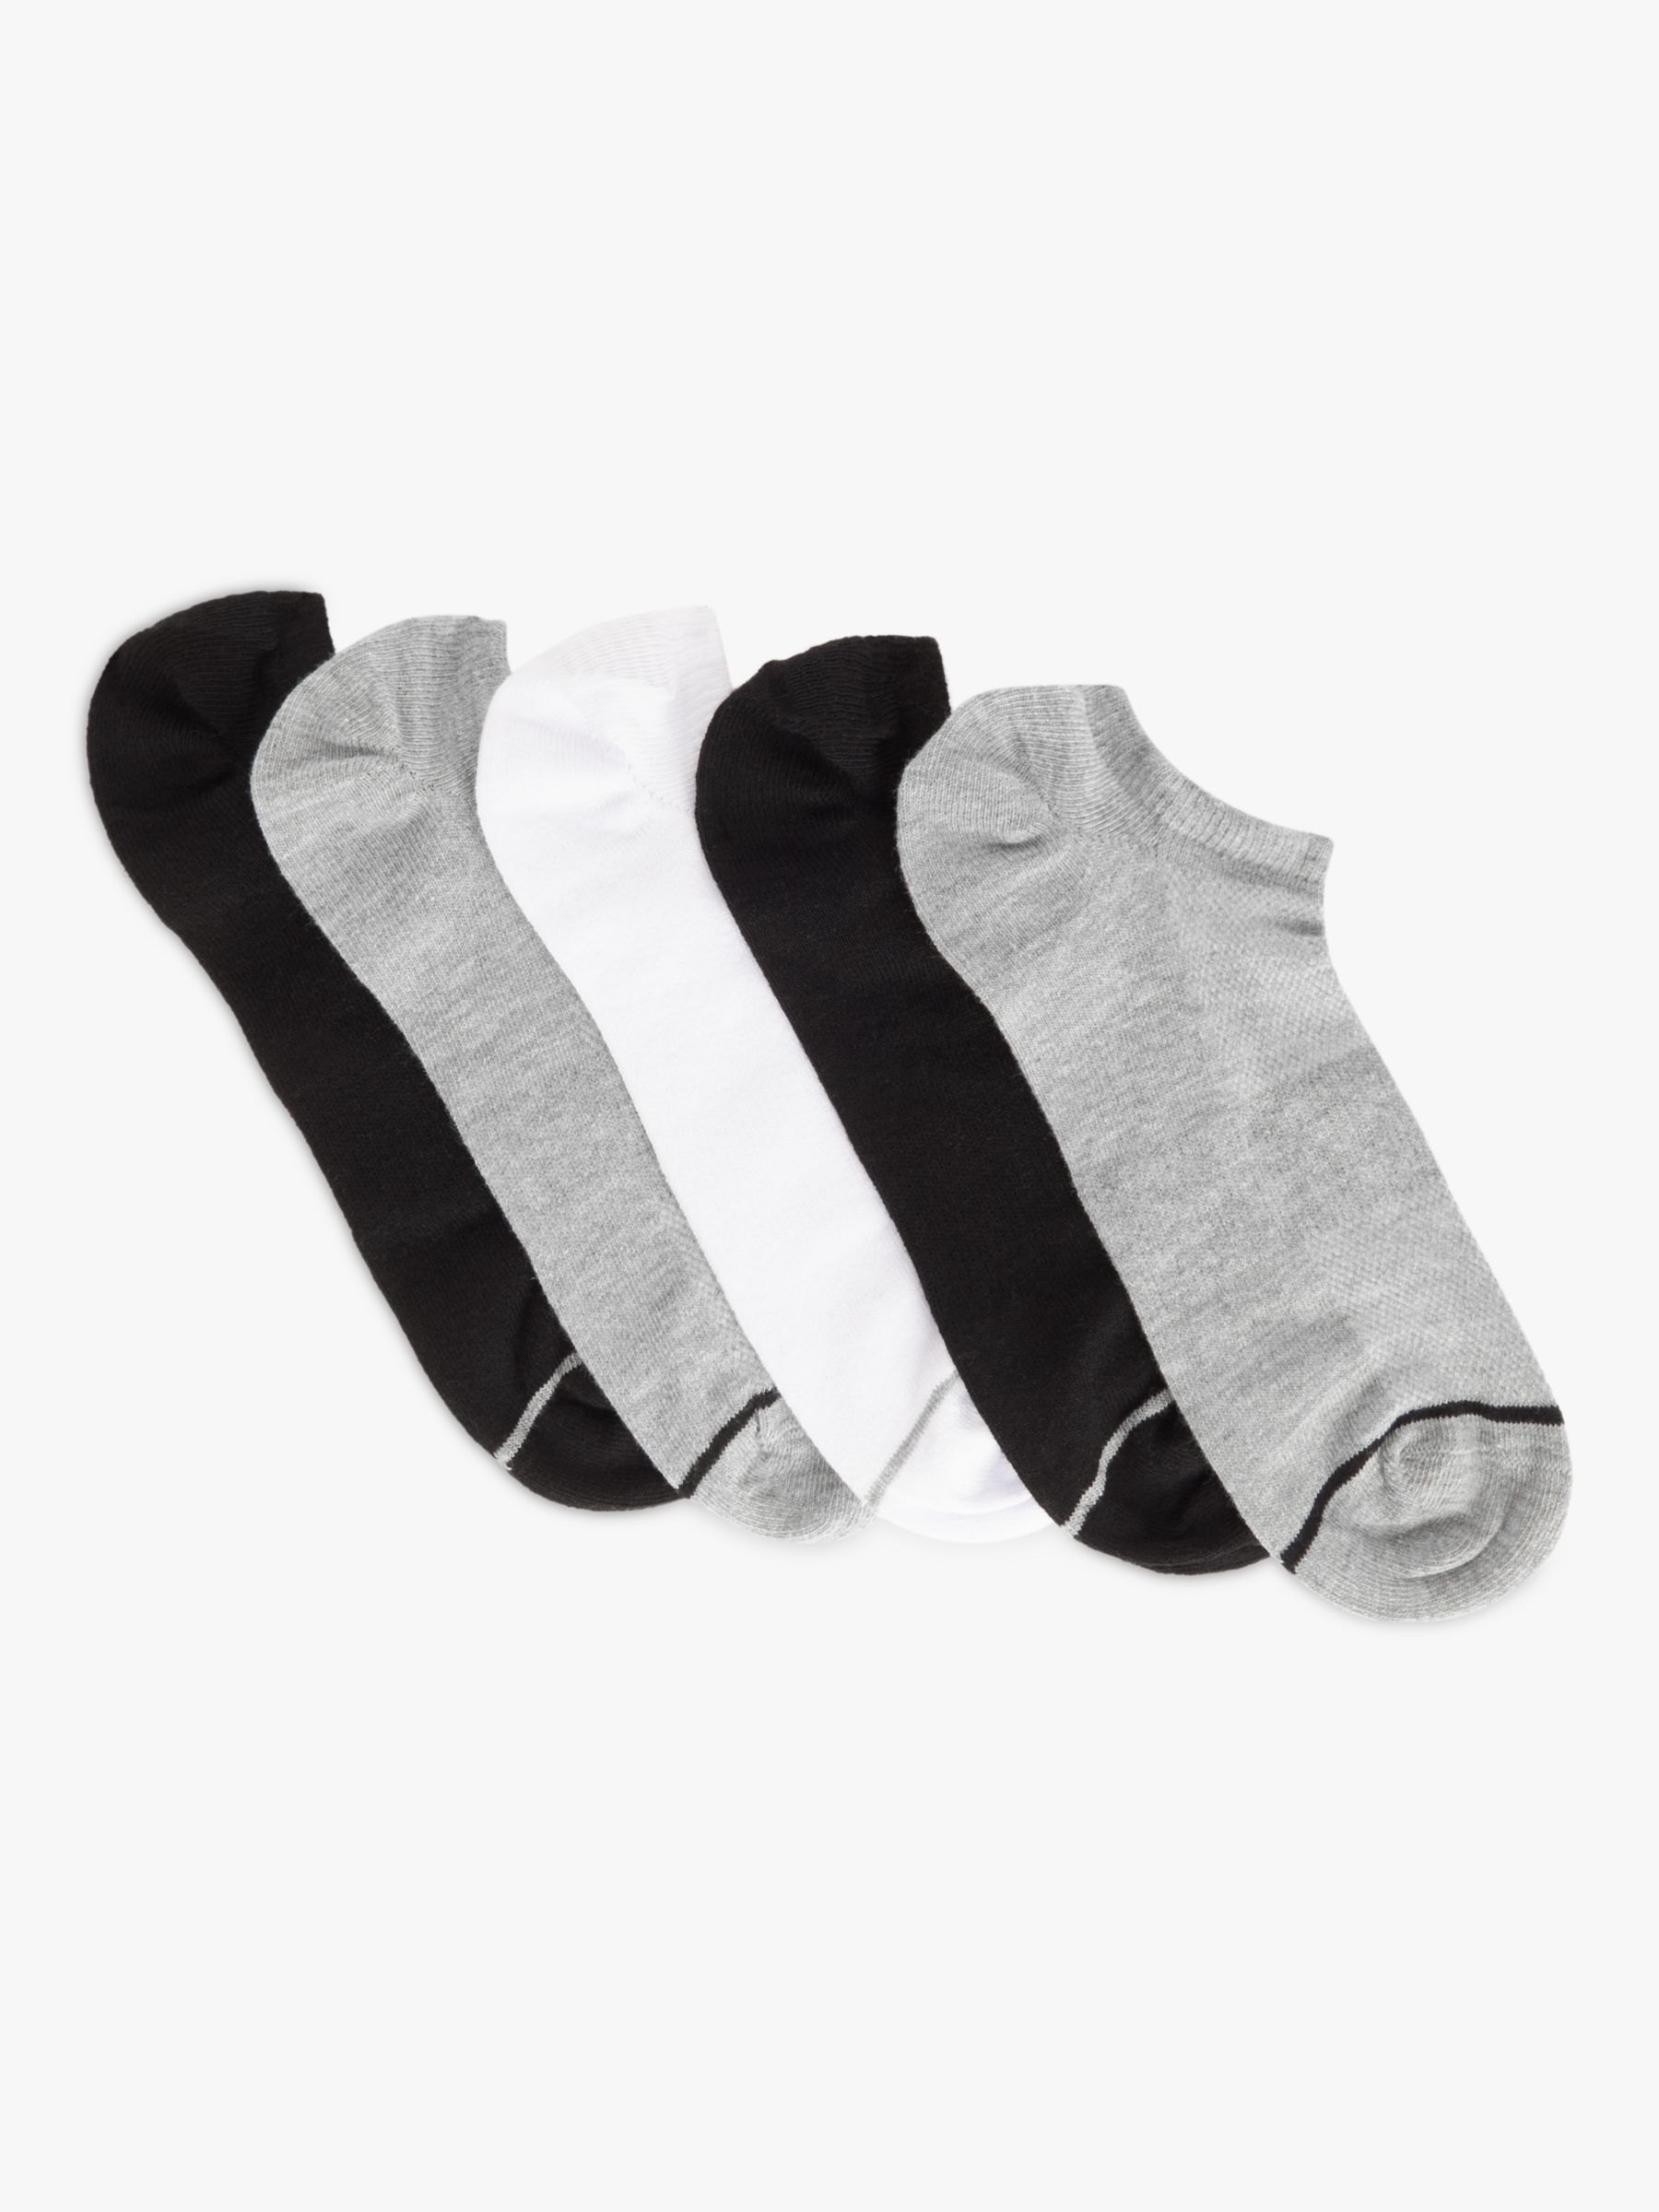 5-pack trainer socks - Light beige/Black/Brown marl - Ladies